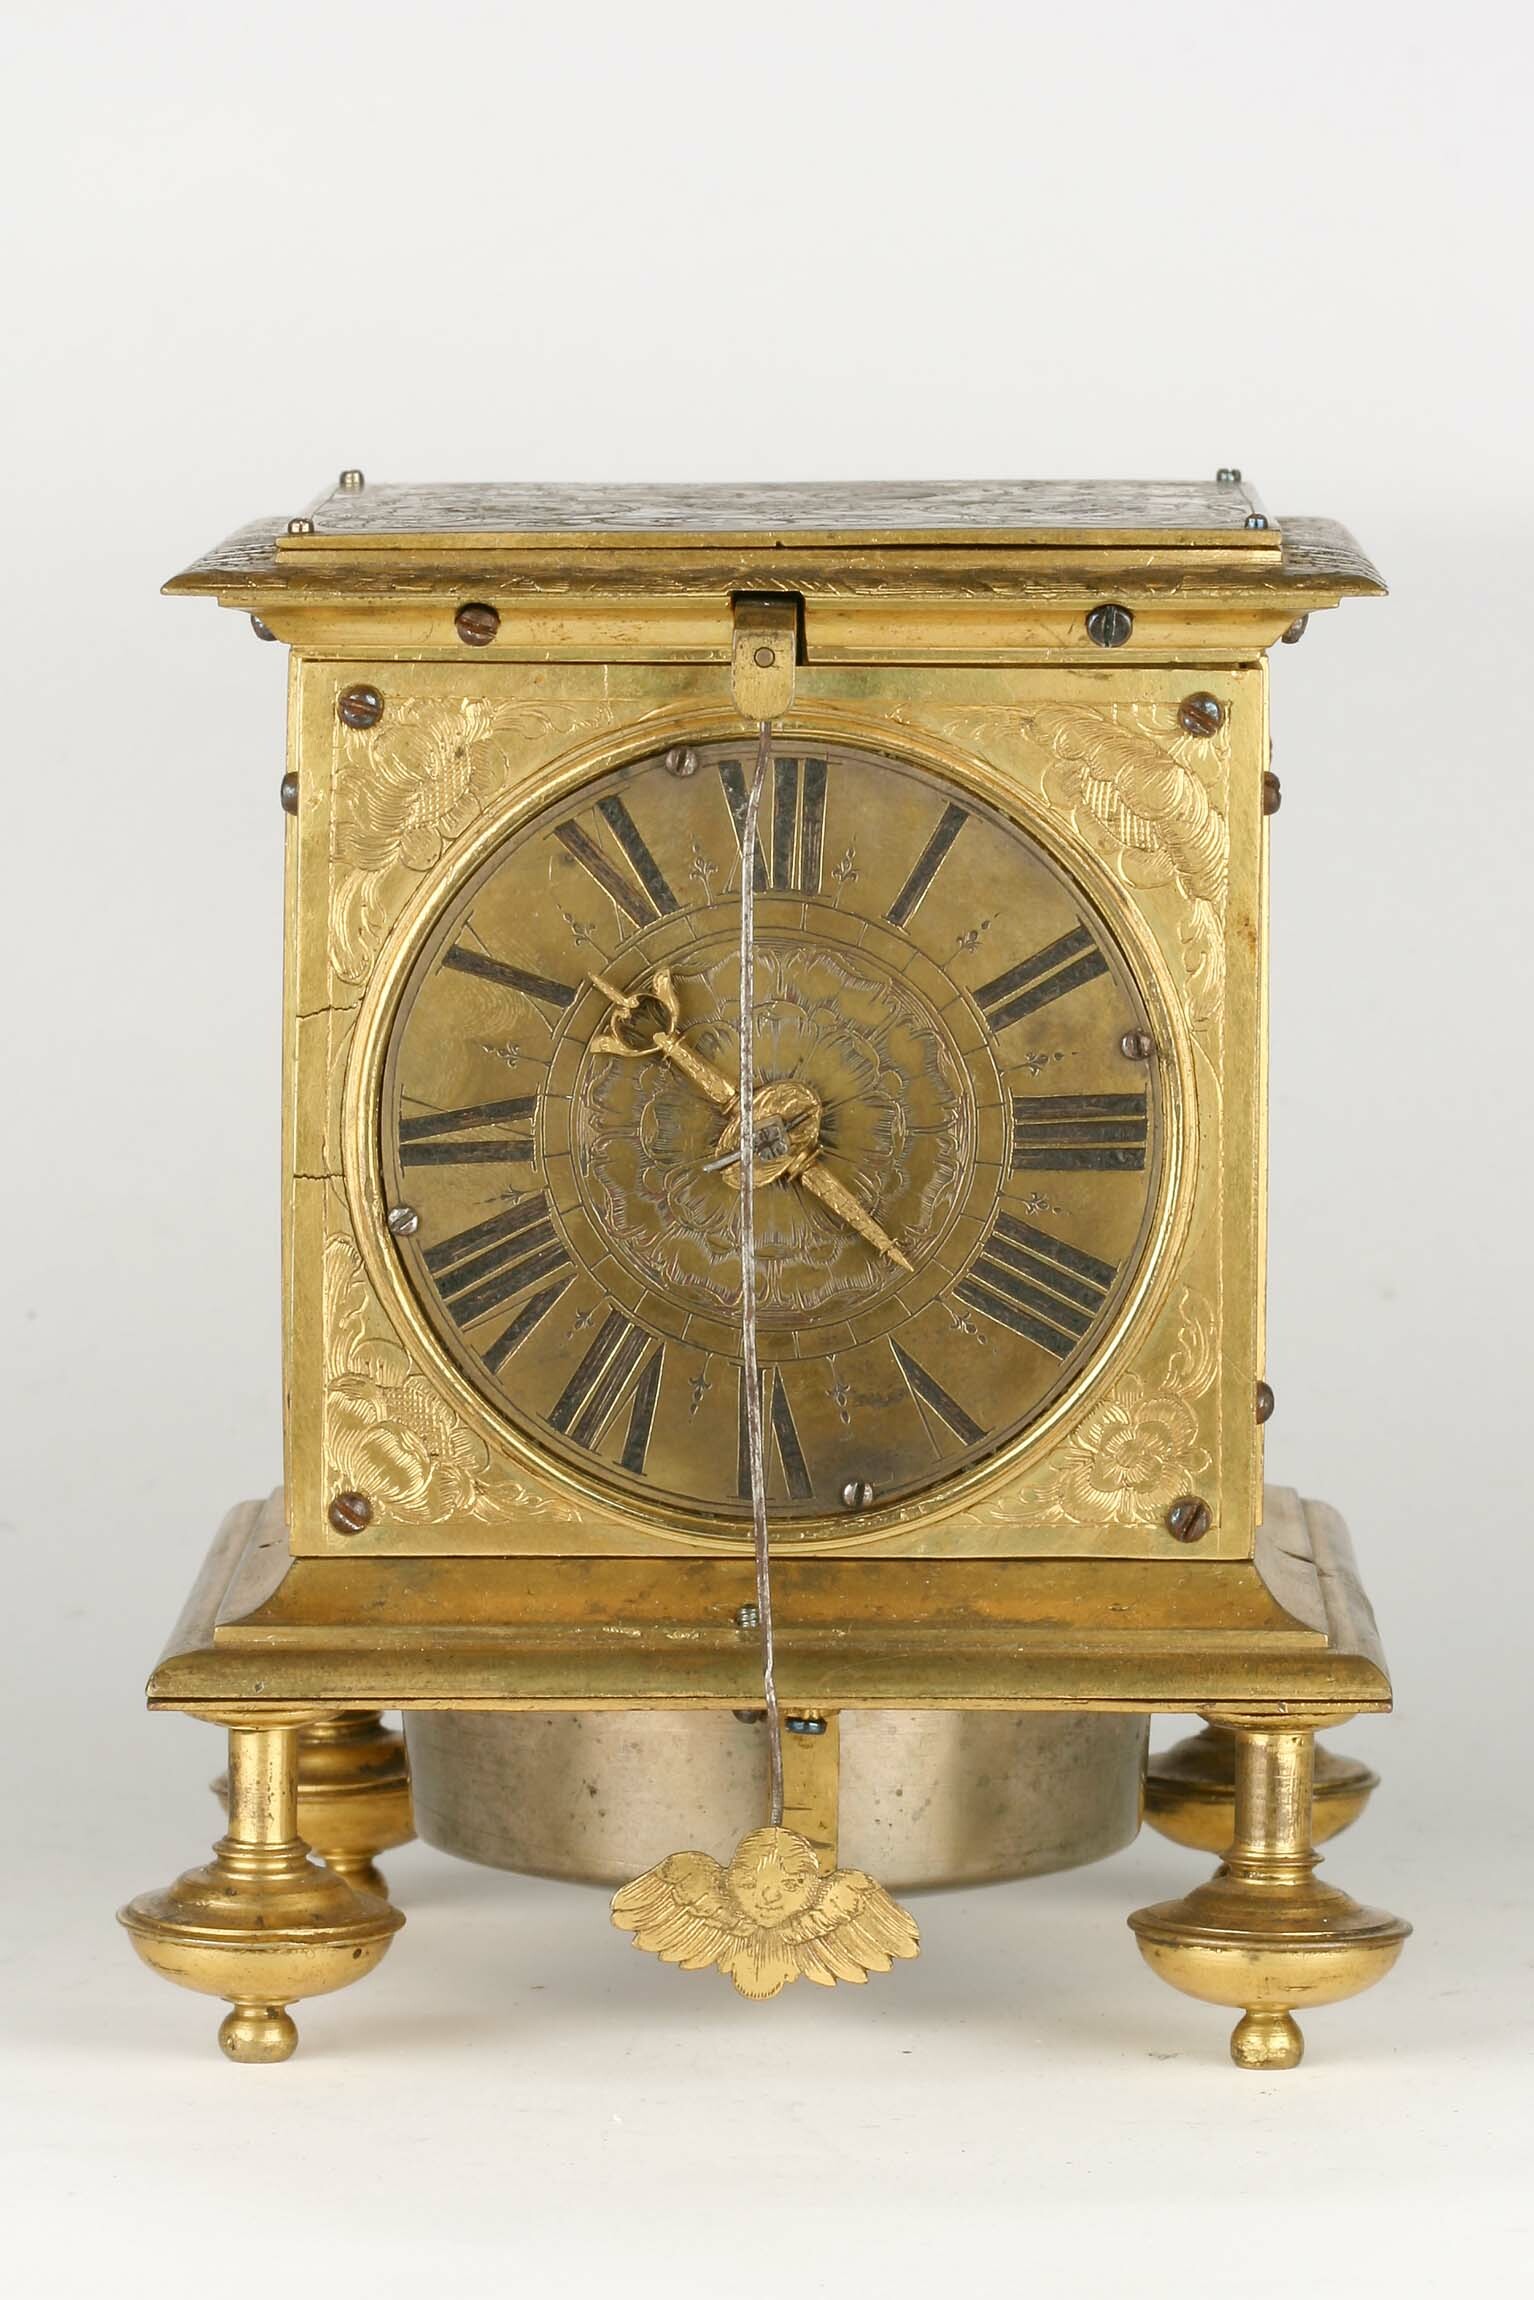 Tischuhr, Marcus Böhm, Augsburg, um 1680 (Deutsches Uhrenmuseum CC BY-SA)